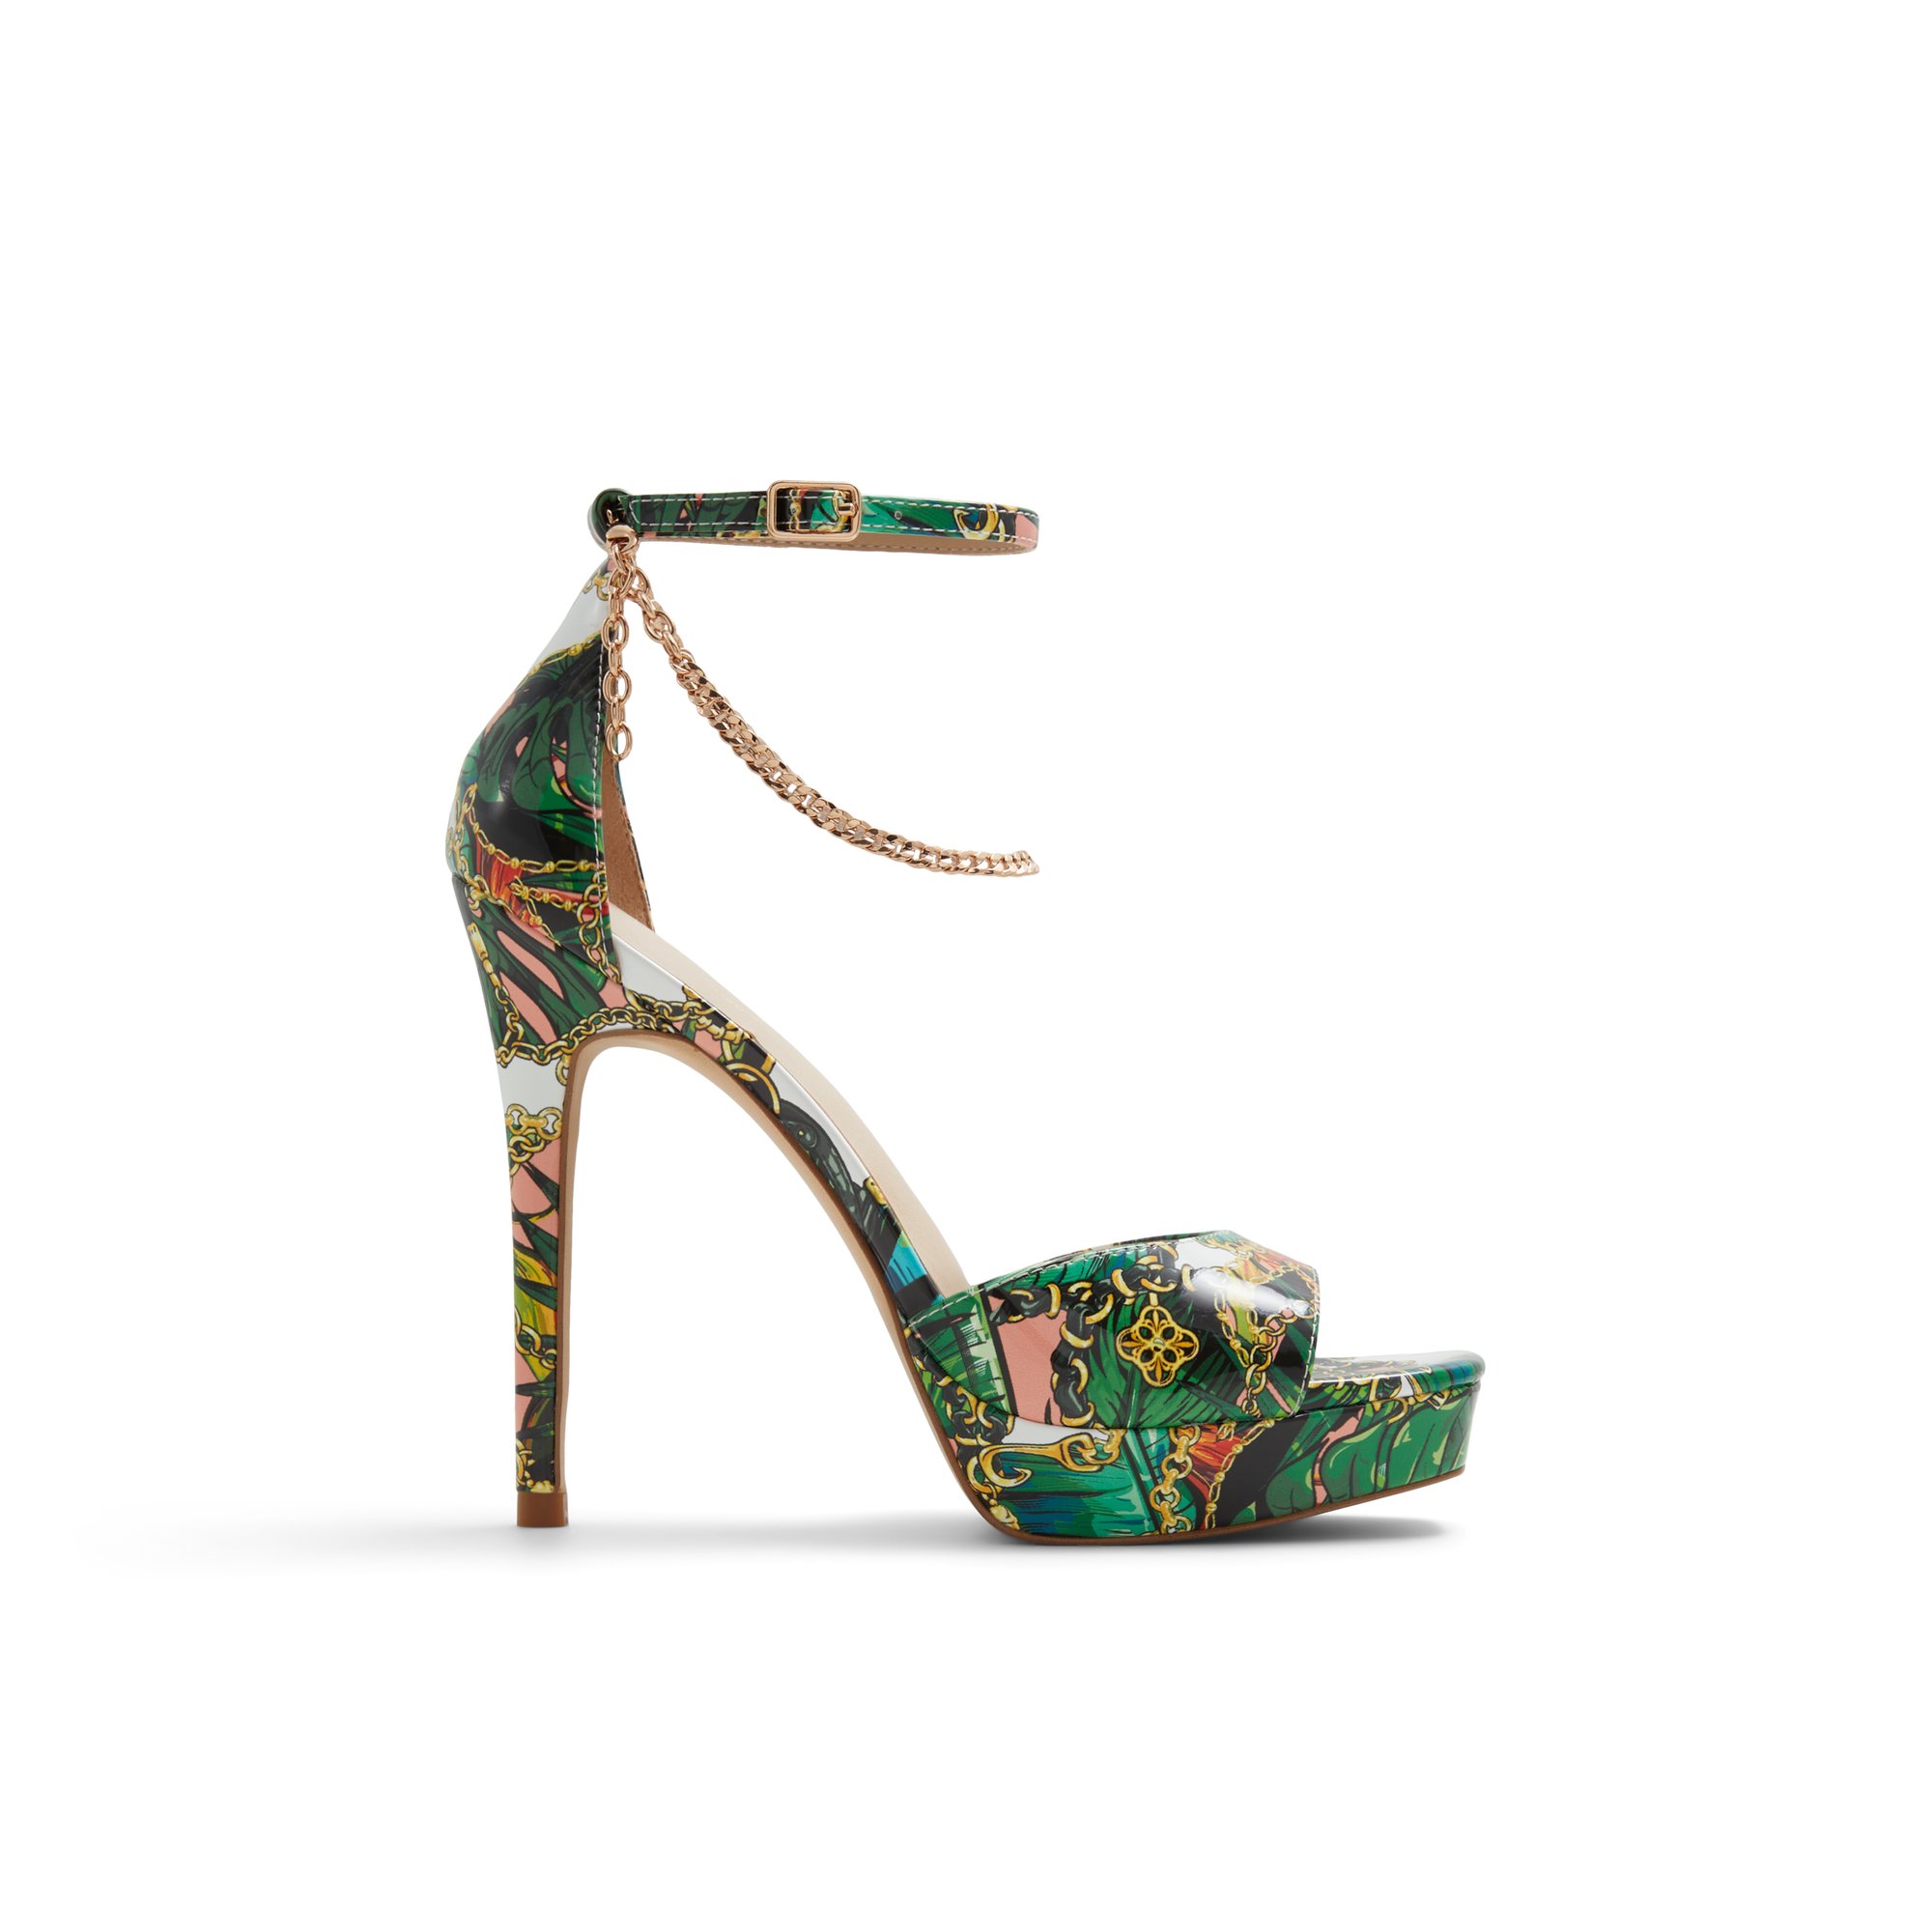 ALDO Prisilla - Women's Strappy Sandal Sandals - Multicolor Patent